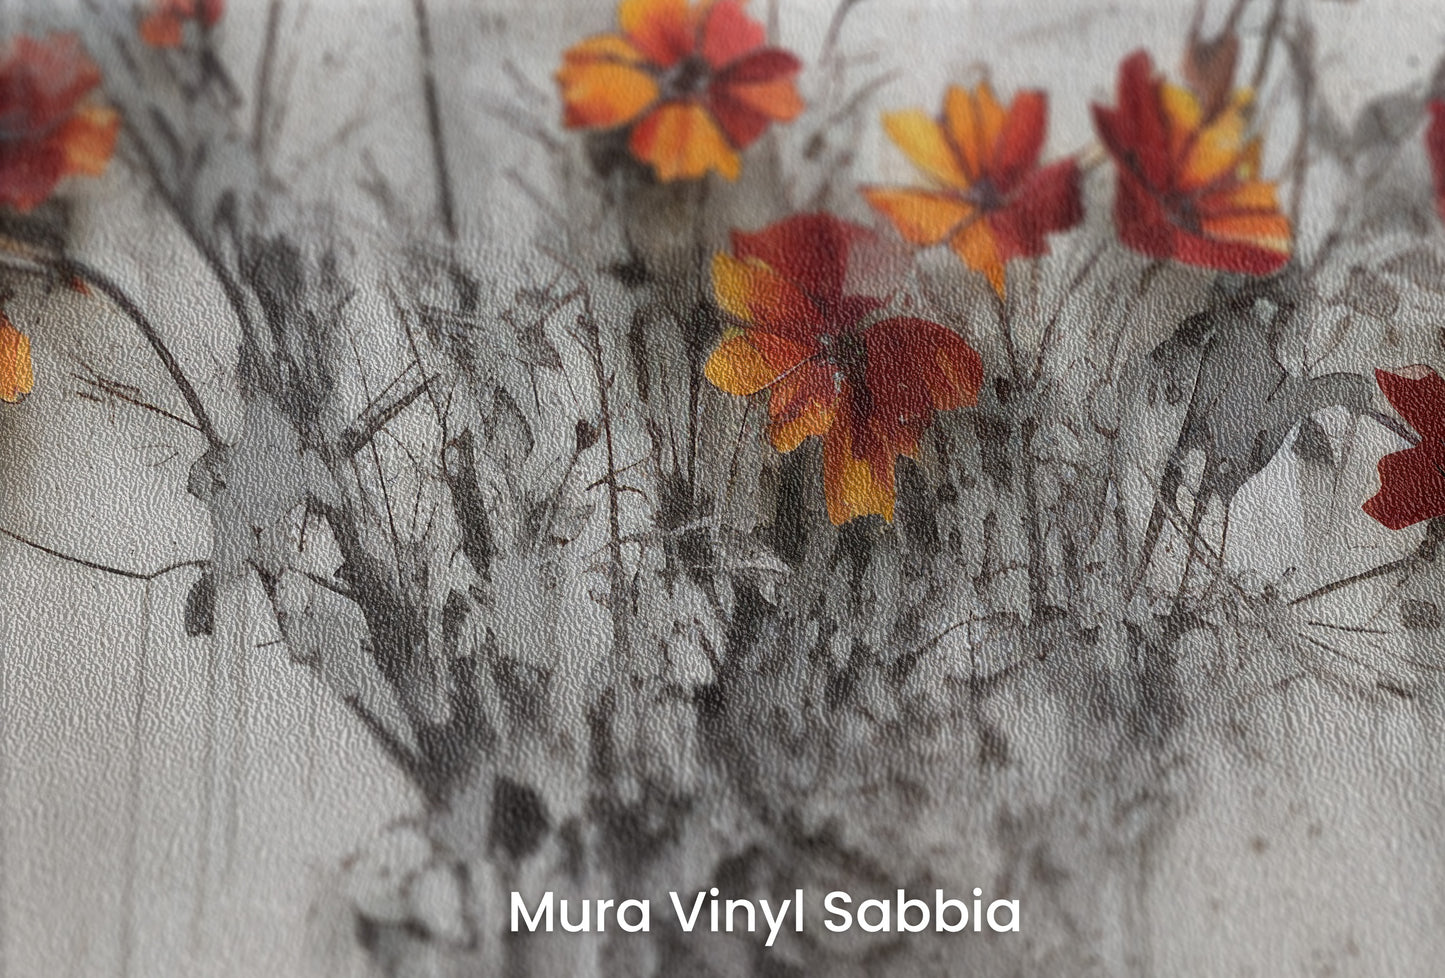 Zbliżenie na artystyczną fototapetę o nazwie VIVID AUTUMN SPLASH na podłożu Mura Vinyl Sabbia struktura grubego ziarna piasku.